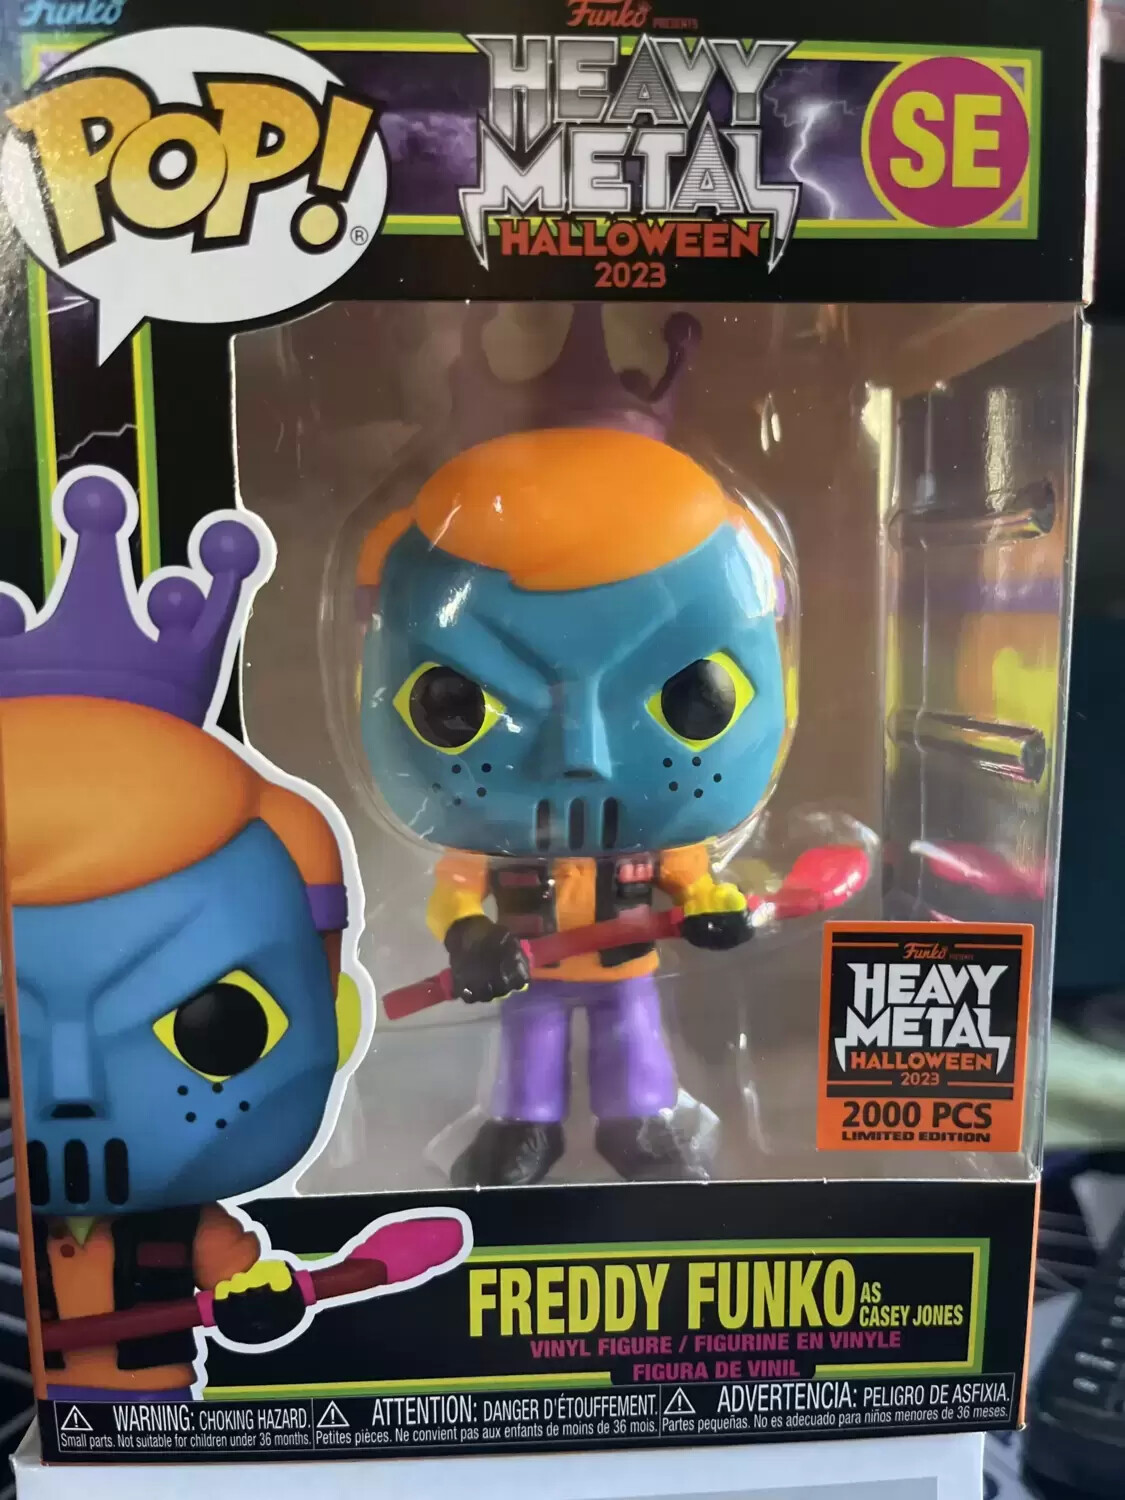 POP! Funko - Funko Heavy Metal Halloween 2023 - Freddy Funko As Casey Jones Blacklight